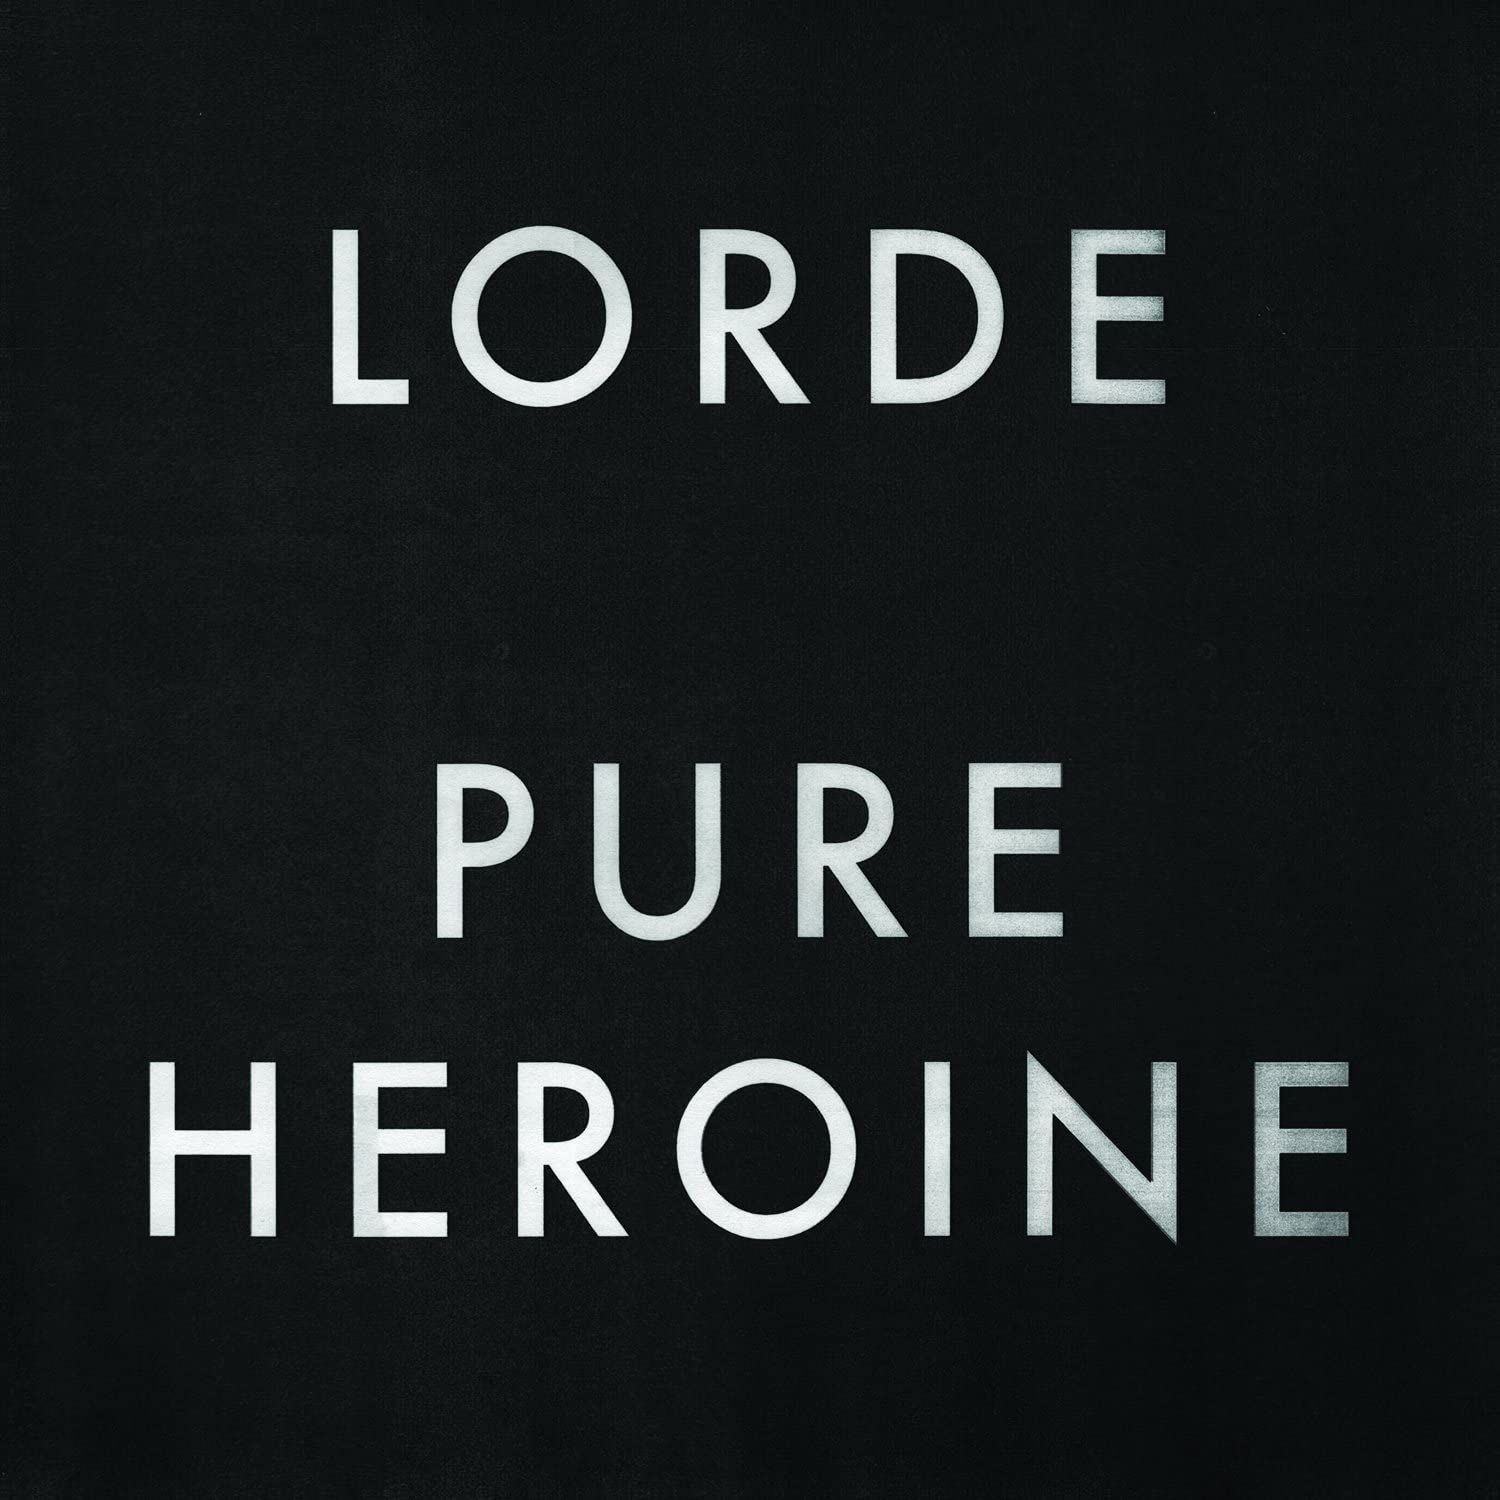 Imagem do álbum Pure Heroine do(a) artista Lorde